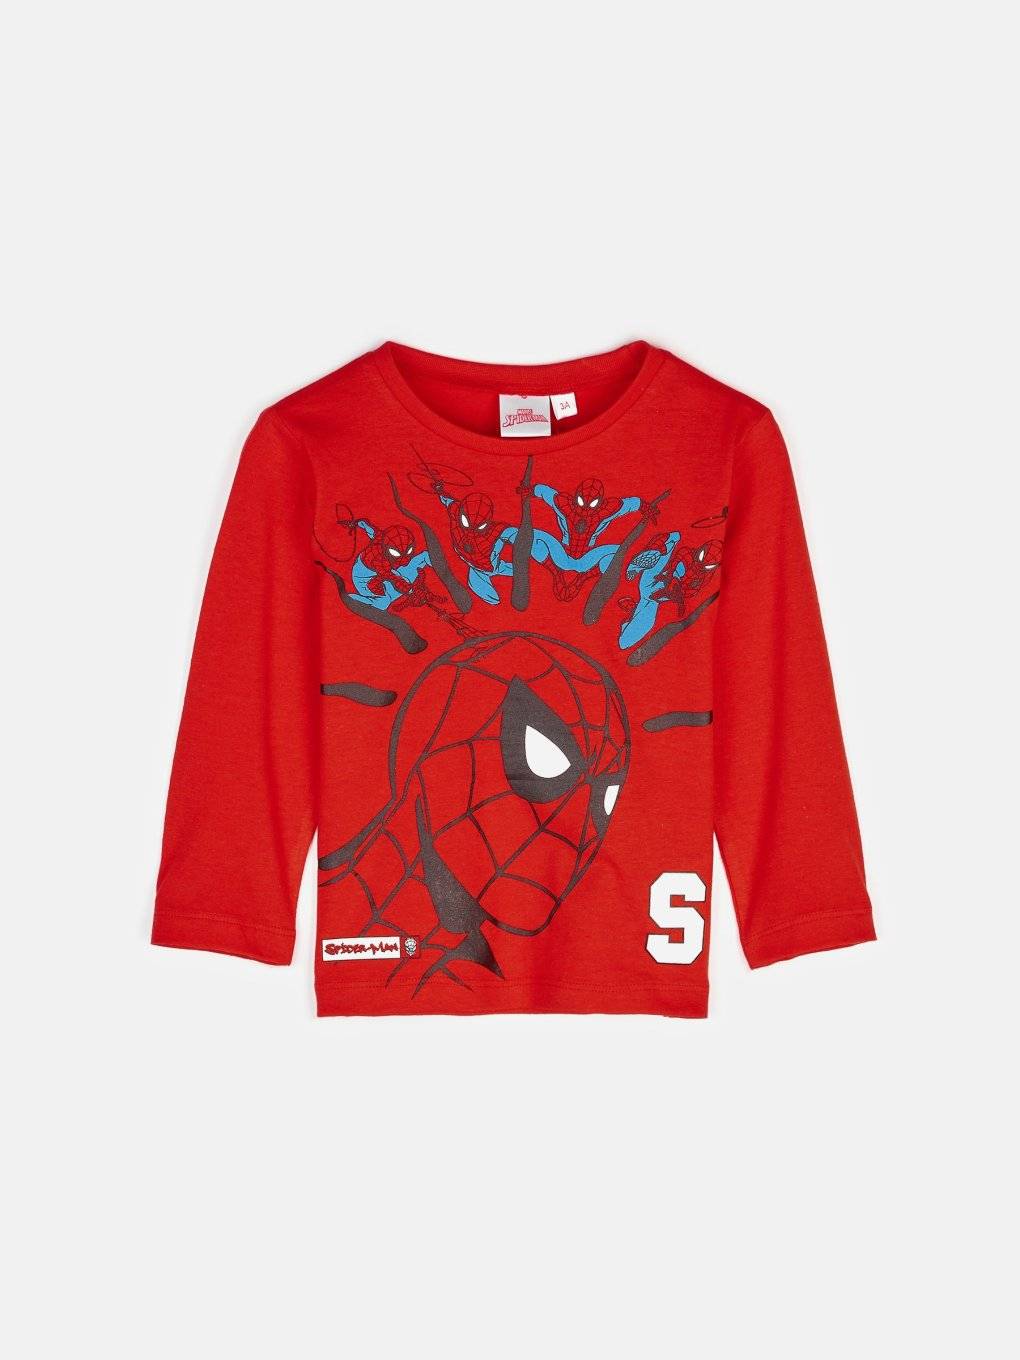 Spiderman T-Shirt aus Baumwolle